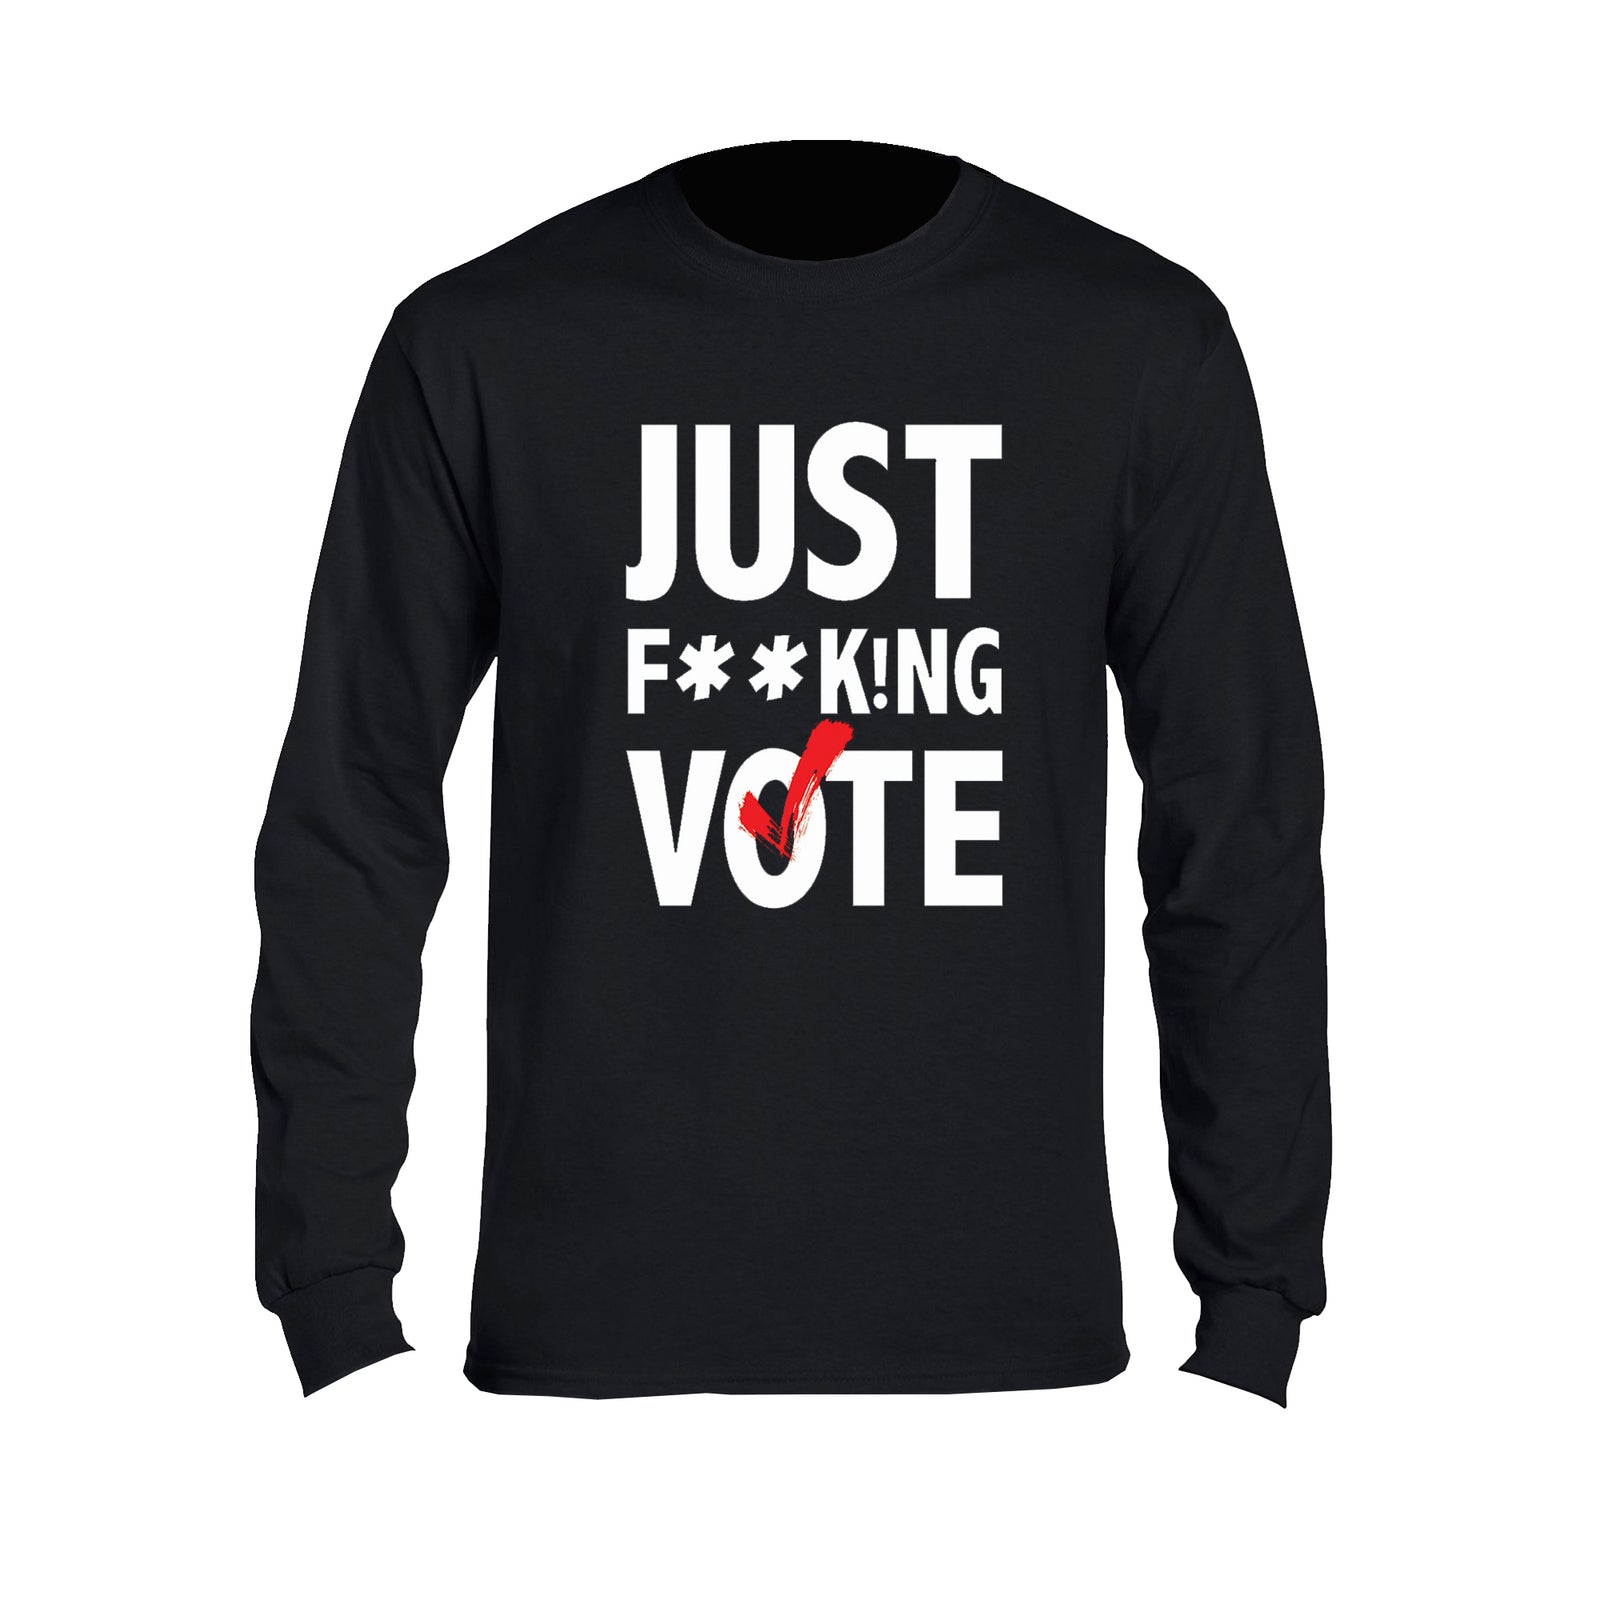 Just F**k!ng Vote [Black] Sweatshirt